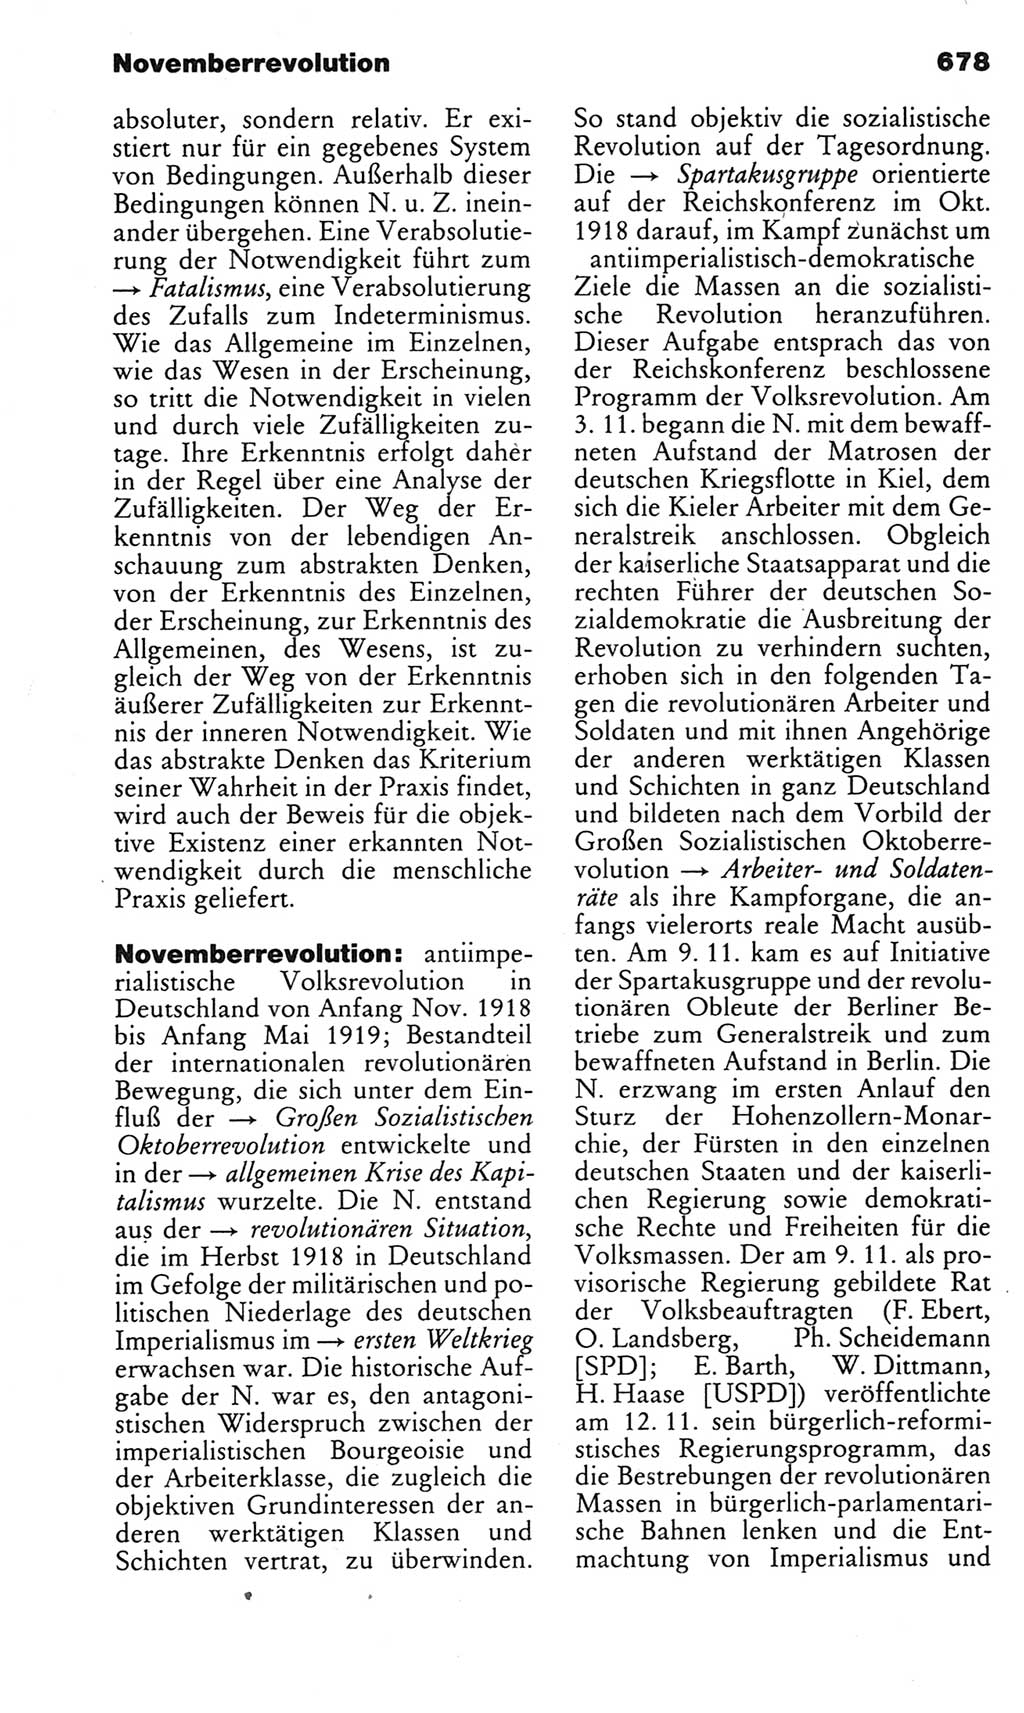 Kleines politisches Wörterbuch [Deutsche Demokratische Republik (DDR)] 1983, Seite 678 (Kl. pol. Wb. DDR 1983, S. 678)